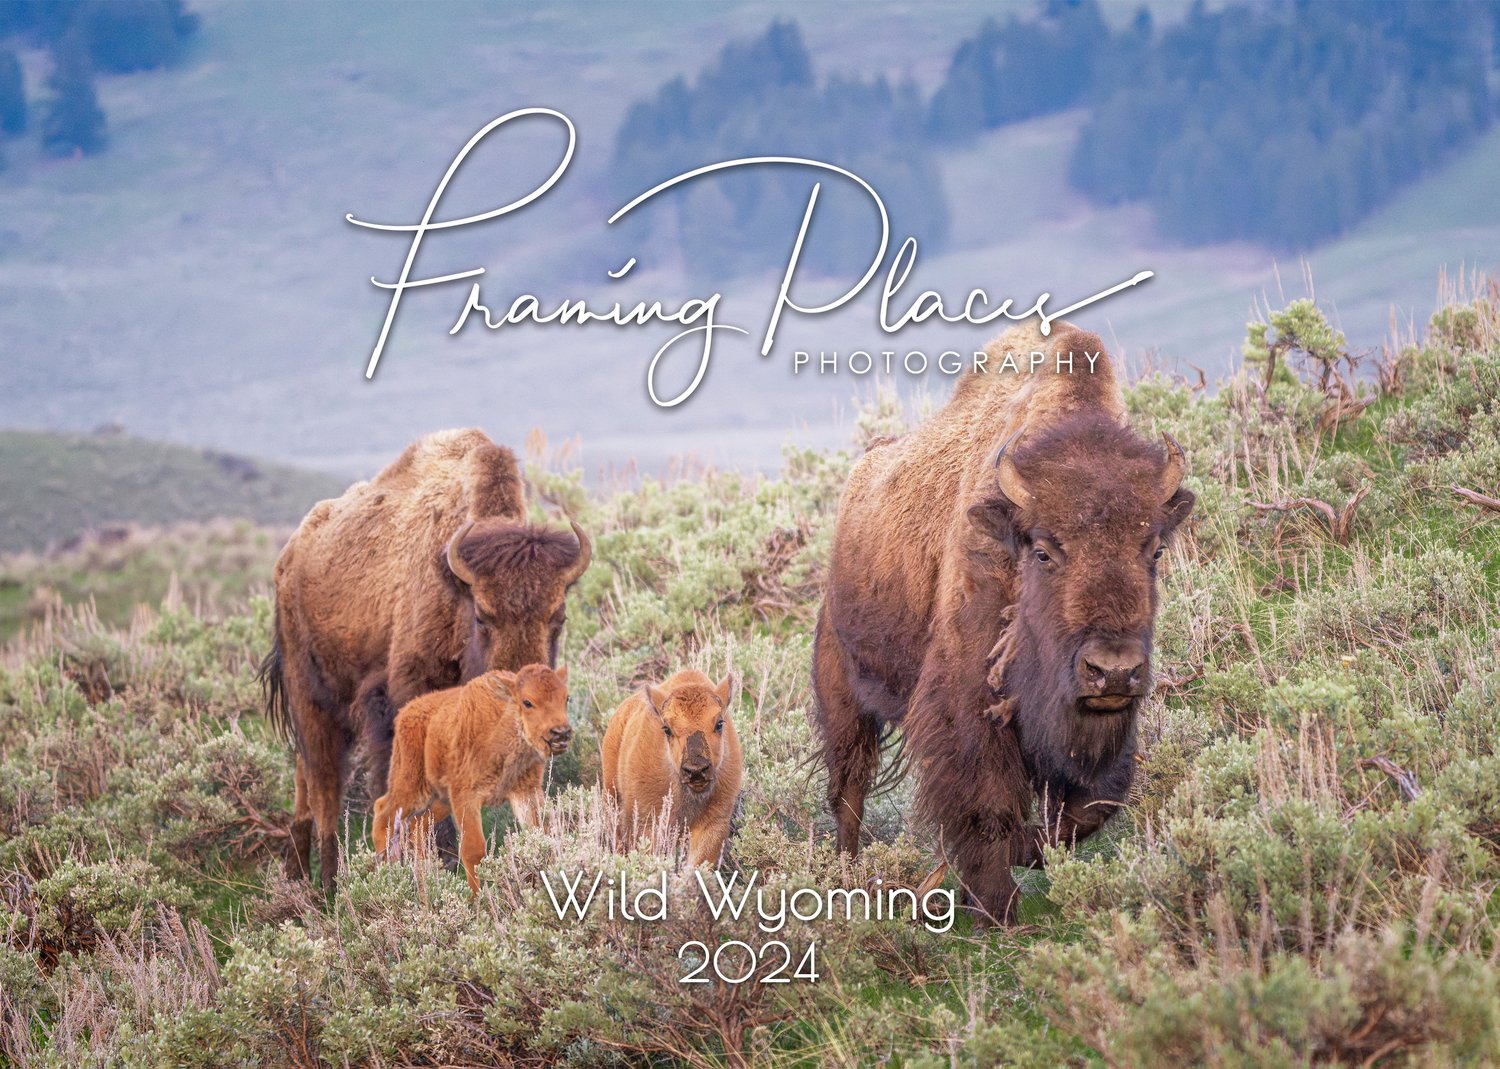 Wild Wyoming 2024